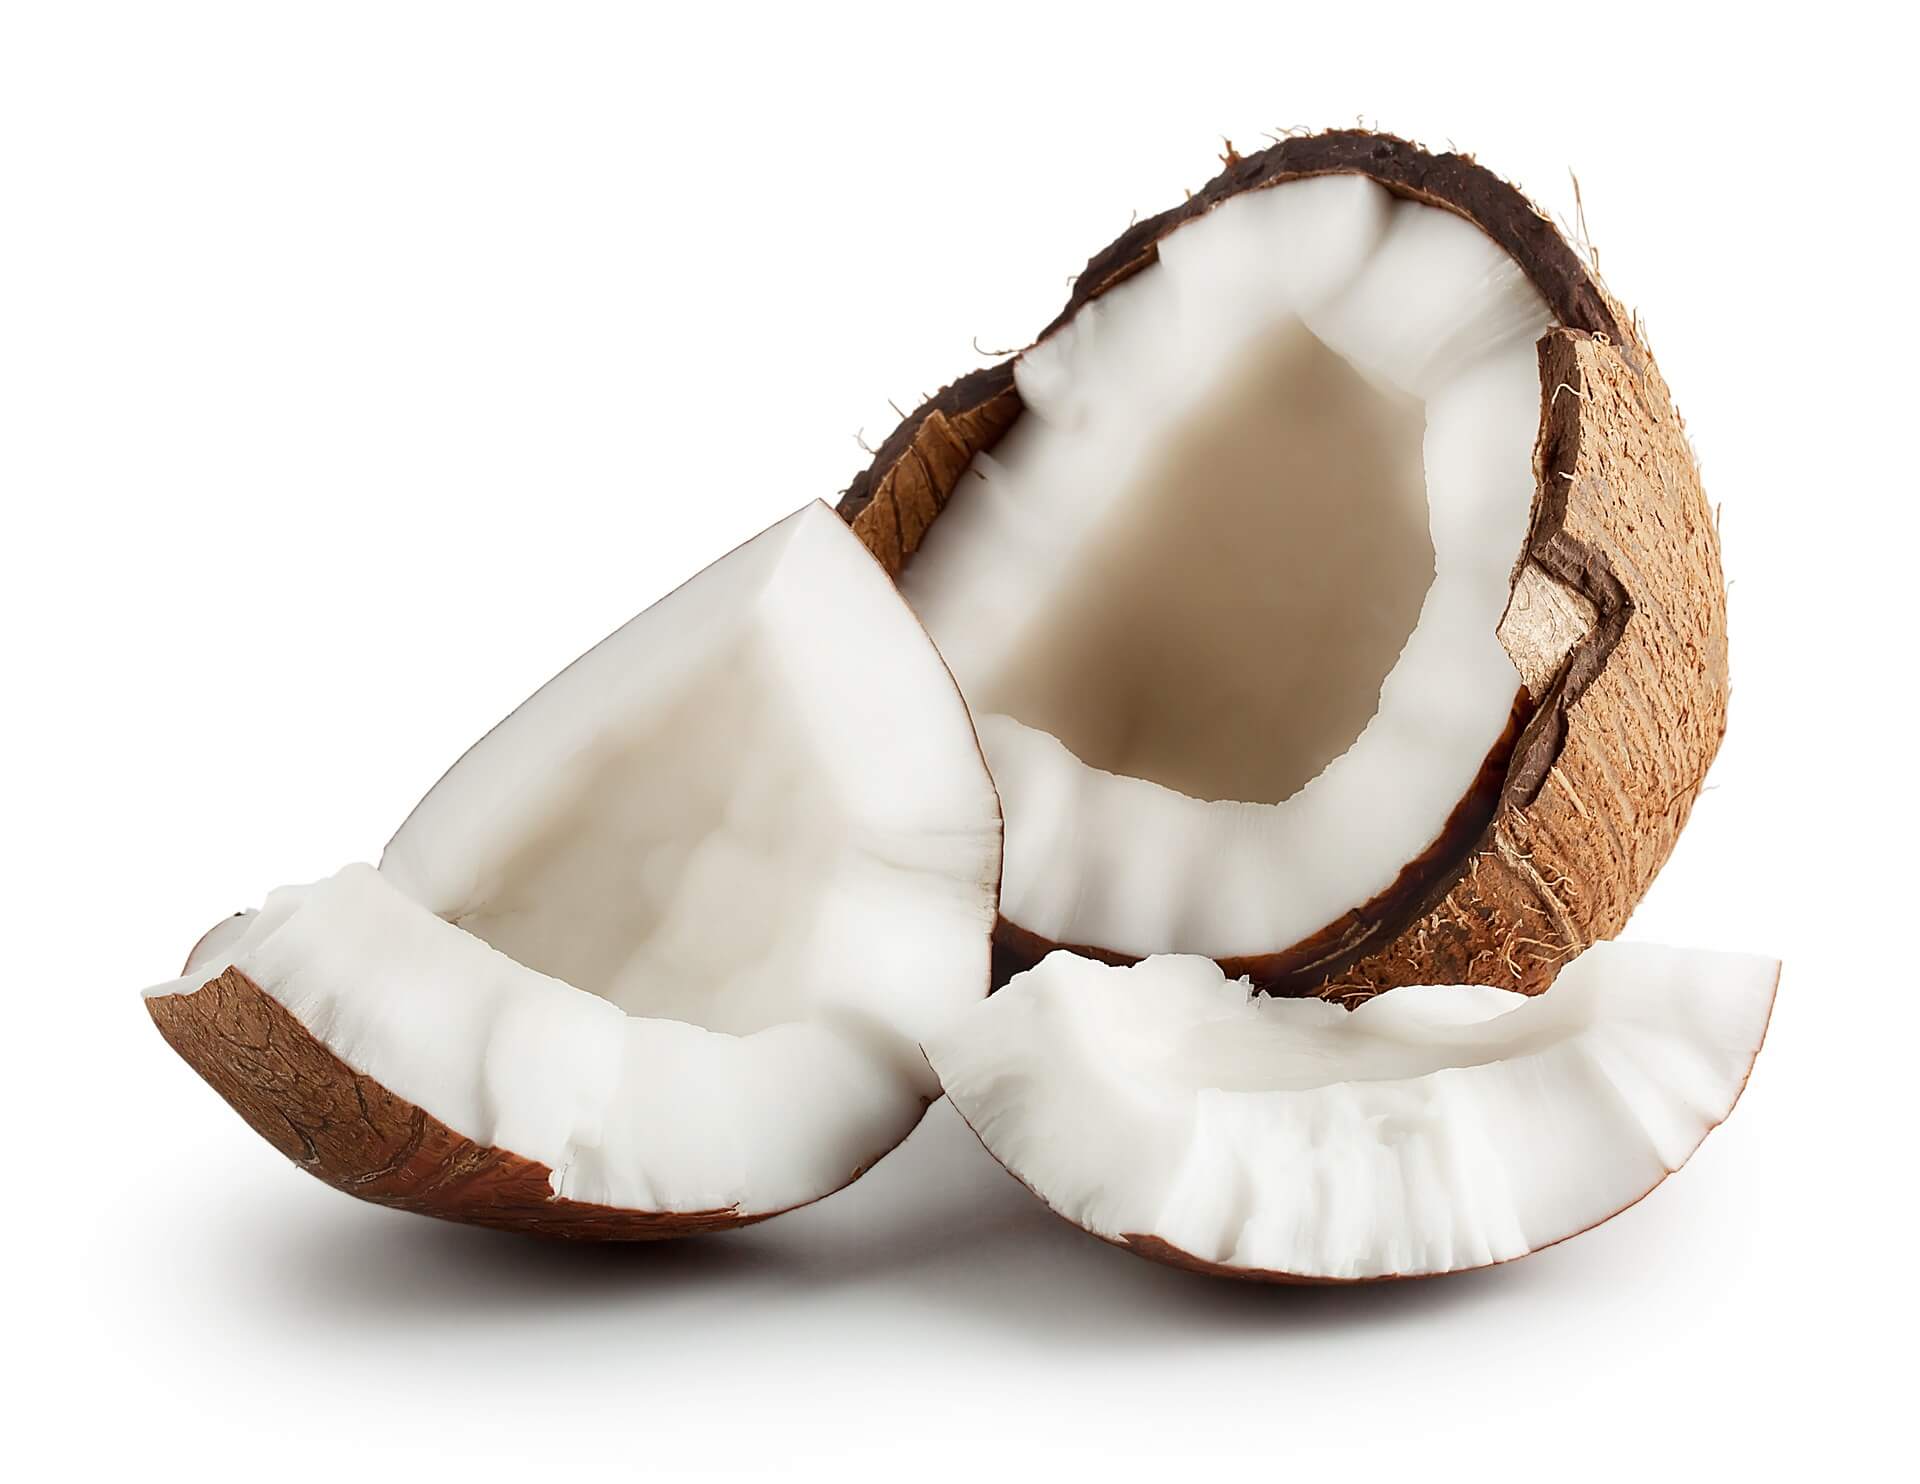 Положительные и отрицательные качества кокоса для беременной женщины